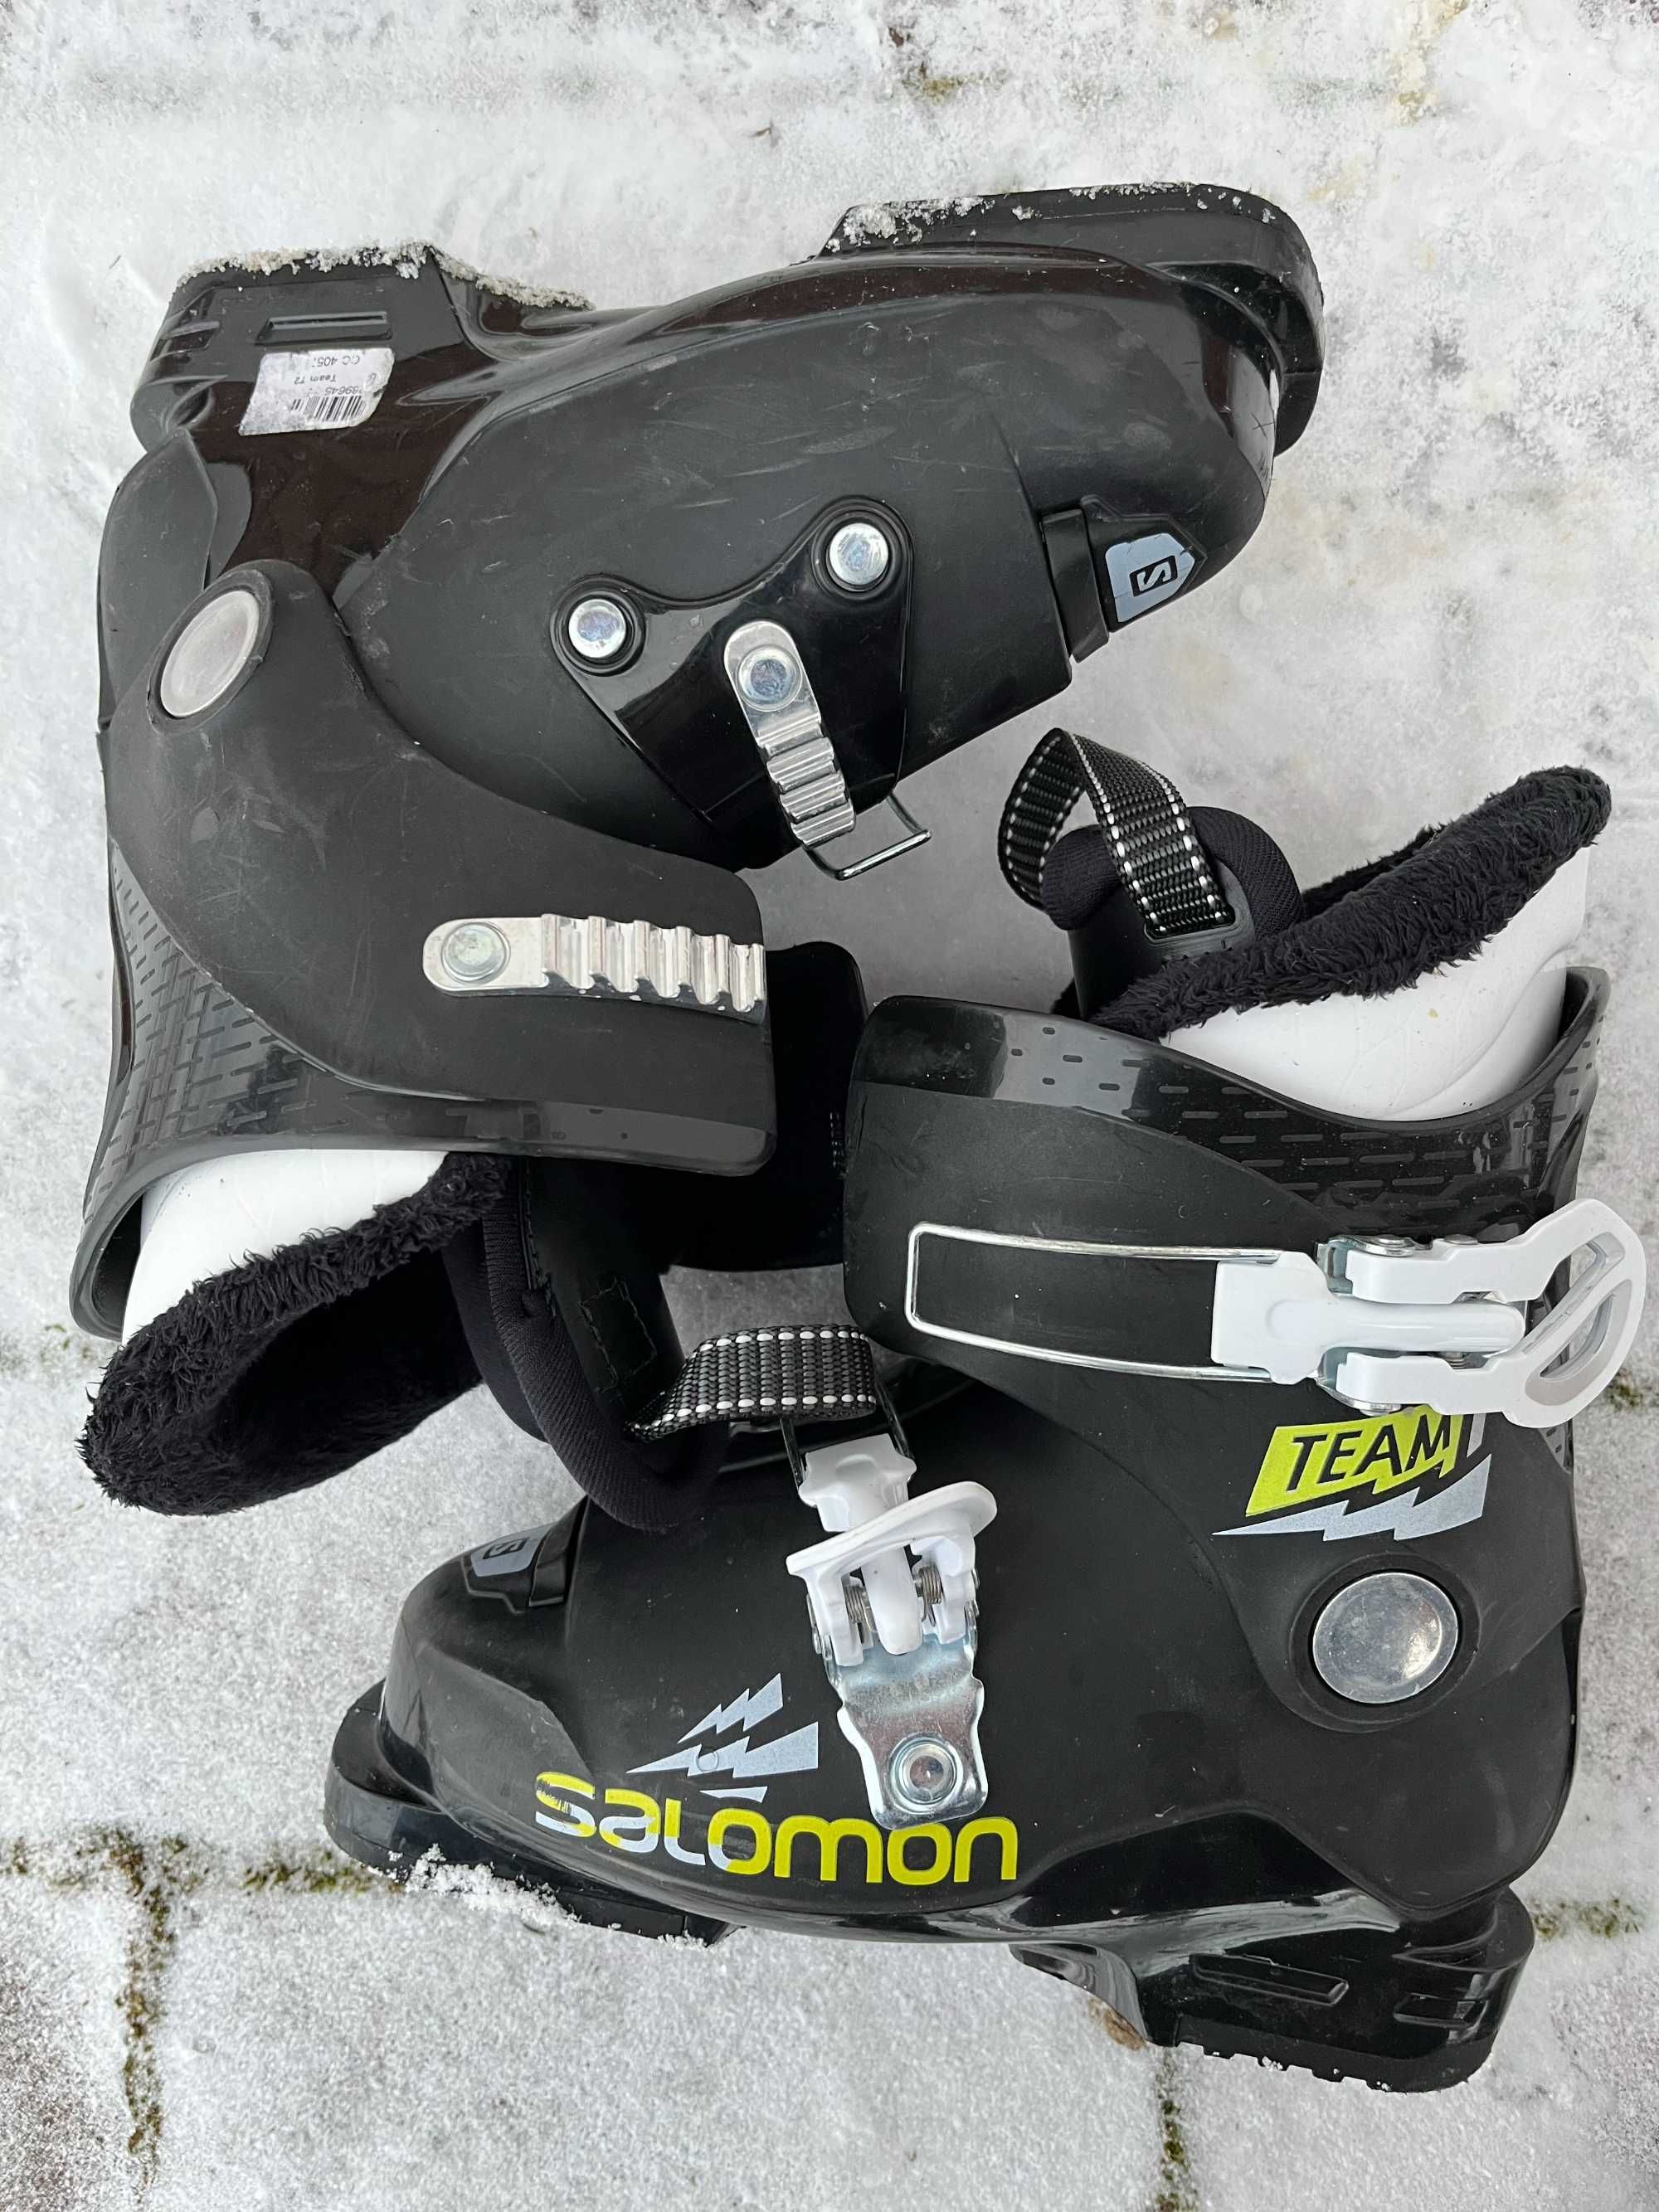 Buty narciarskie Salomon Team T2, wkładka 20-20,5cm